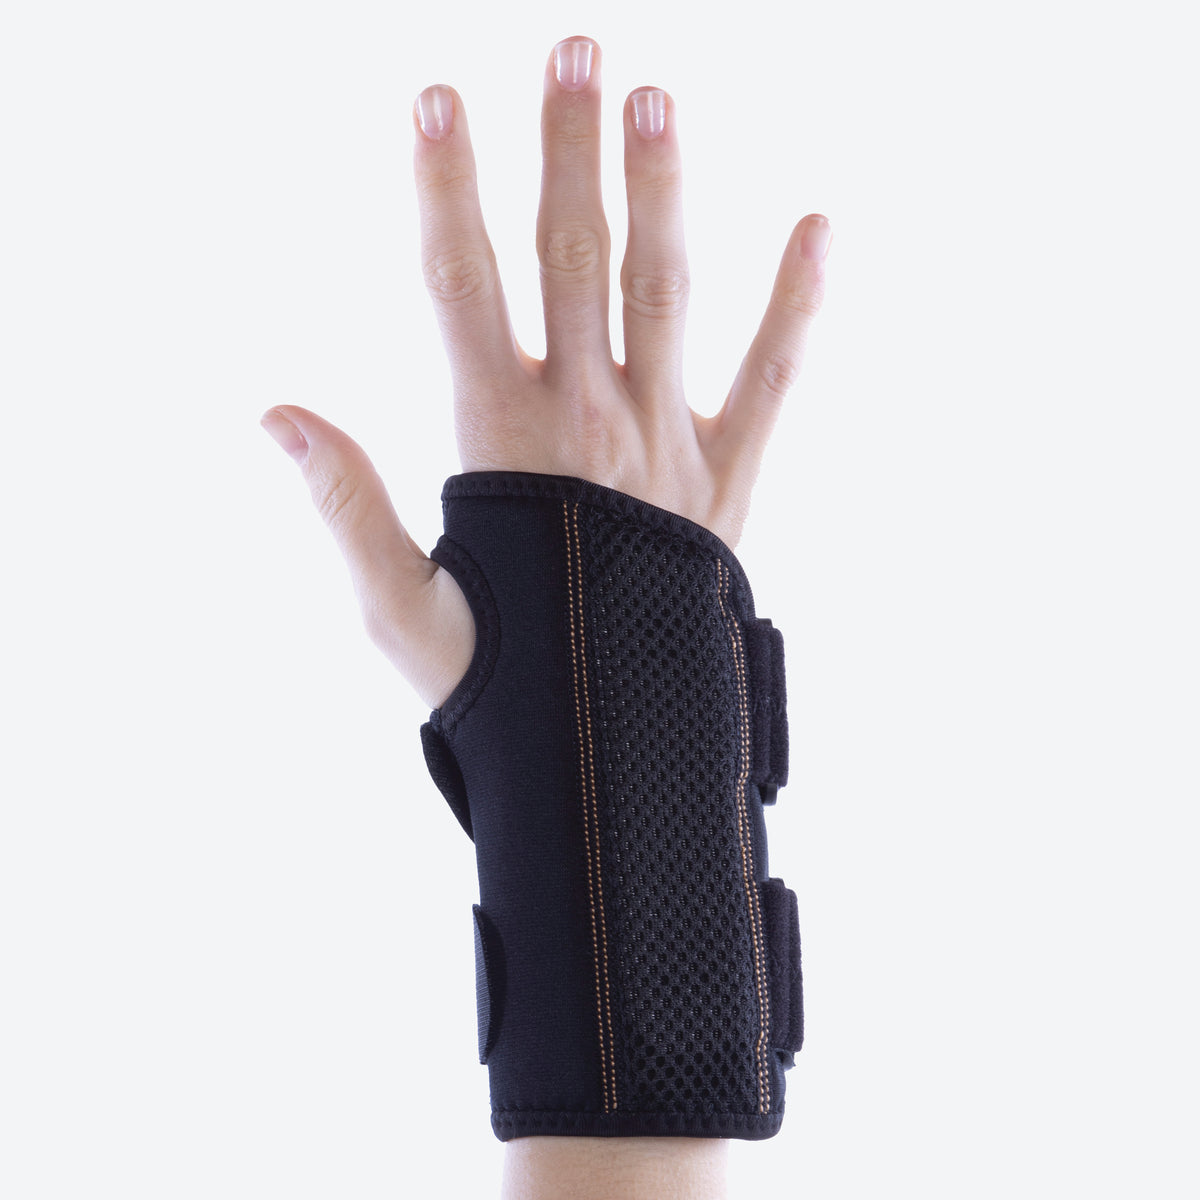 Copper Fit Rapid Relief, Wrist Brace Adjustable Fits Right Wrist S/M -  Black - General Maintenance & Diagnostics Ltd